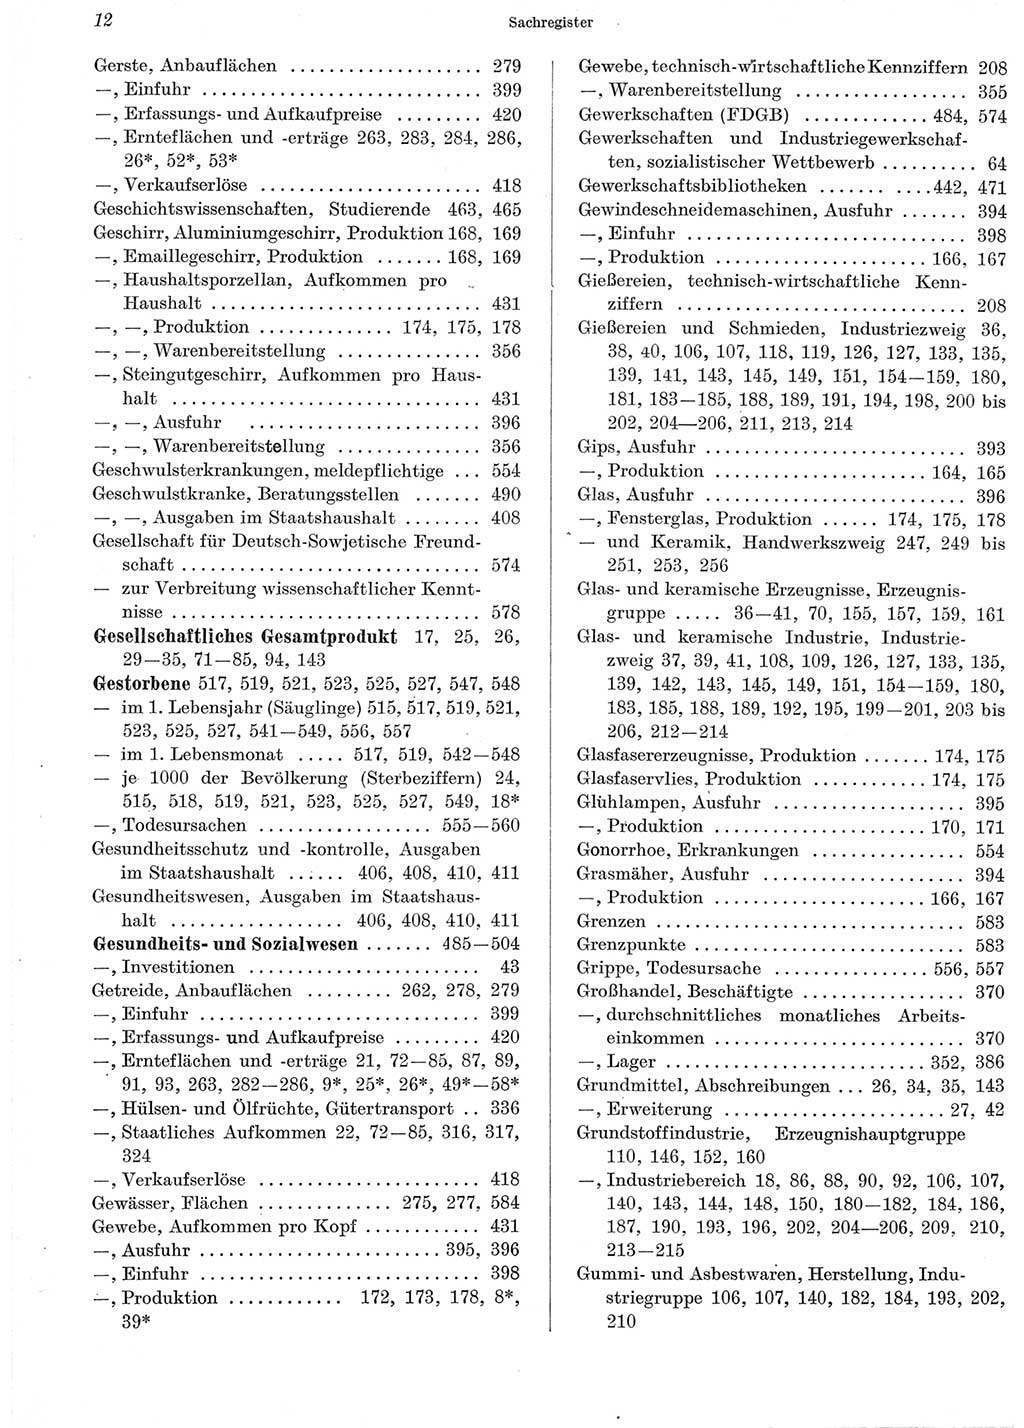 Statistisches Jahrbuch der Deutschen Demokratischen Republik (DDR) 1965, Seite 12 (Stat. Jb. DDR 1965, S. 12)